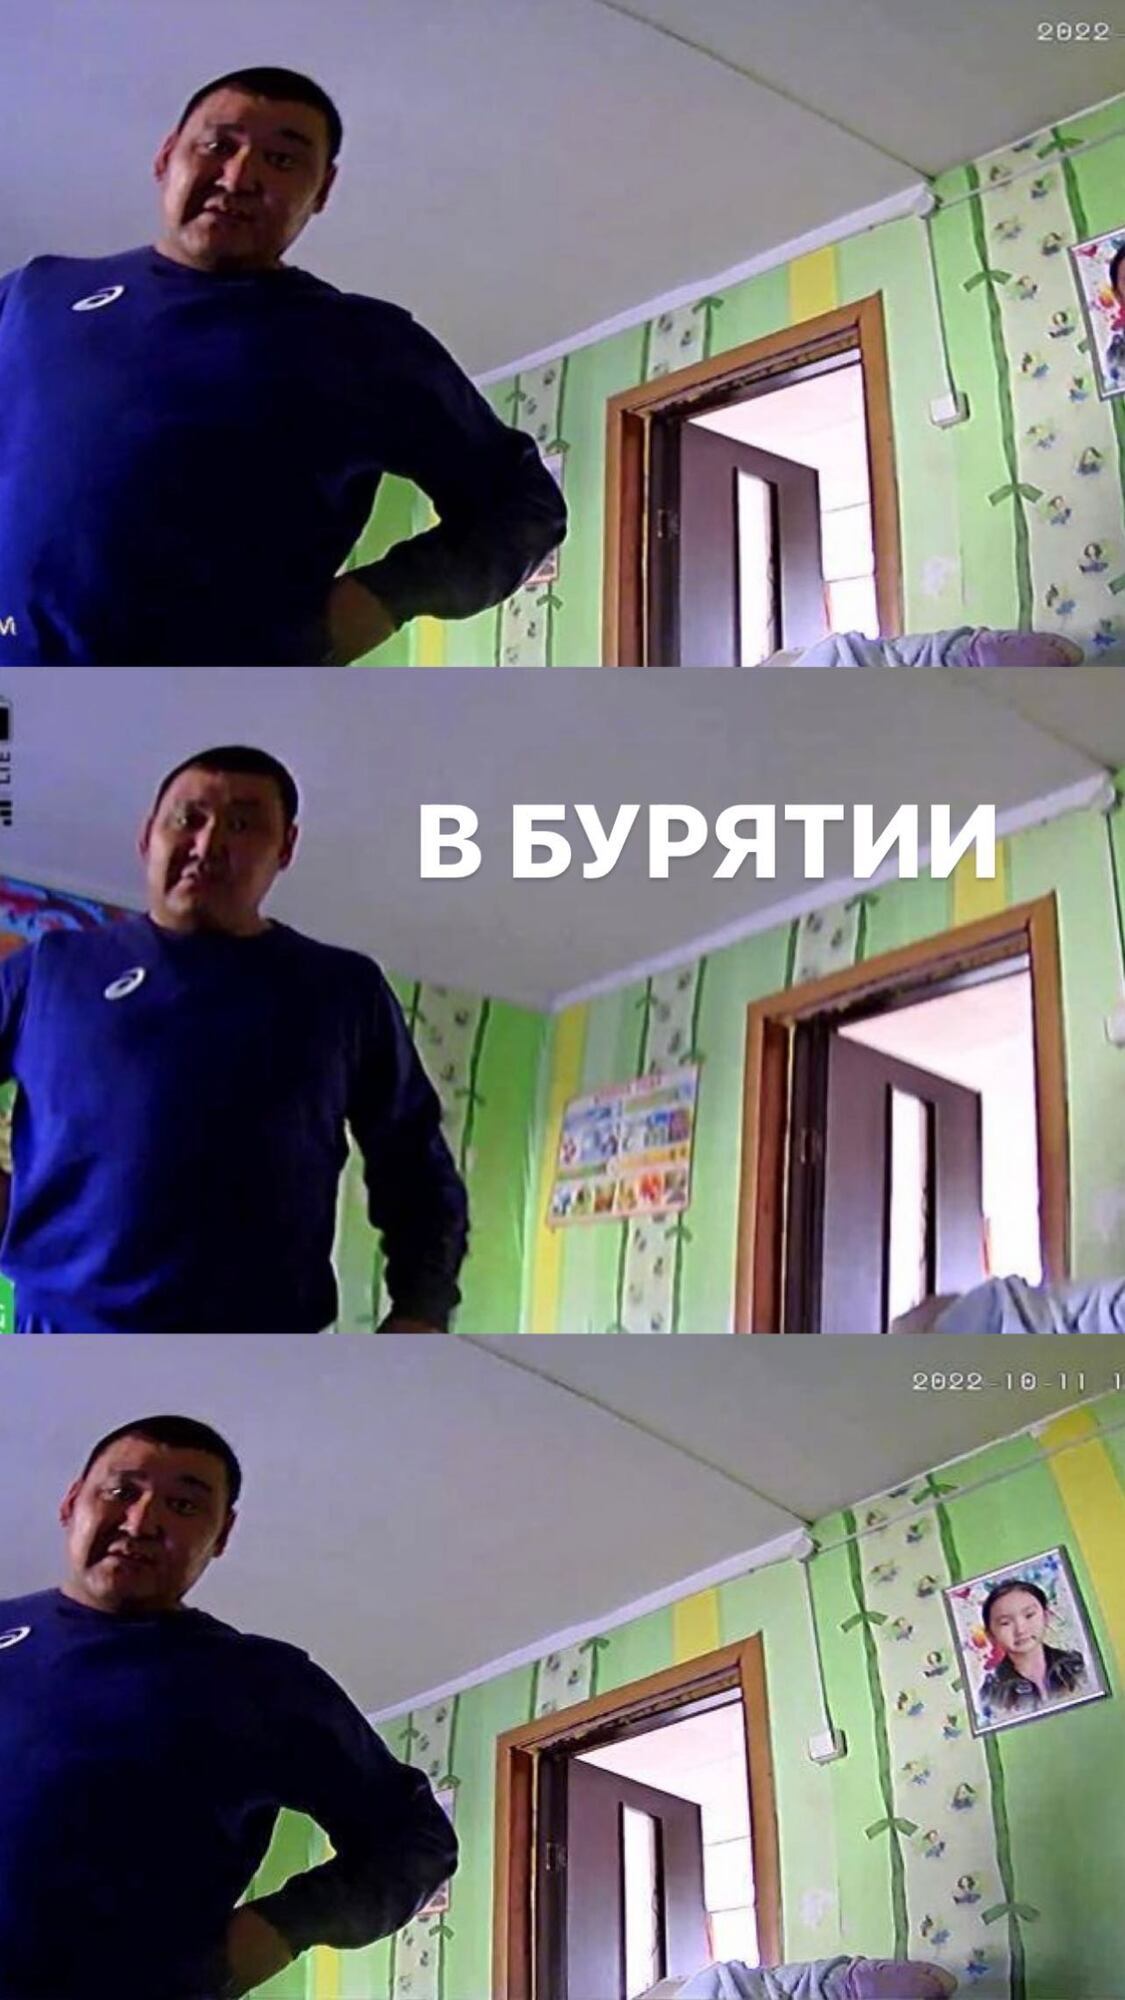 Бурятский "Дом-2": оккупант установил украденную в Украине камеру в своем доме, теперь ее владелец смотрит трансляцию. Фото и видео